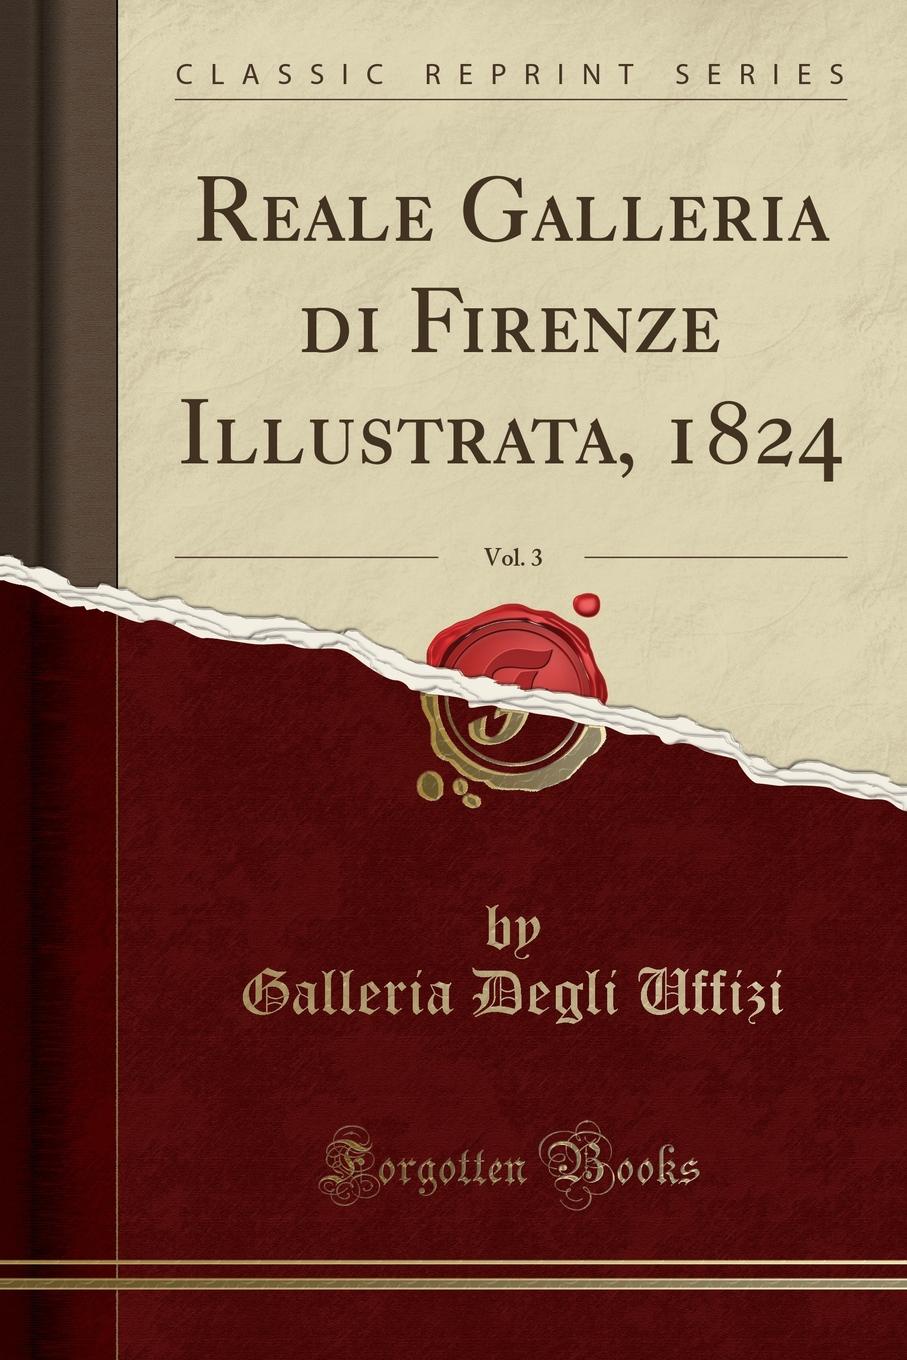 Galleria Degli Uffizi Reale Galleria di Firenze Illustrata, 1824, Vol. 3 (Classic Reprint)